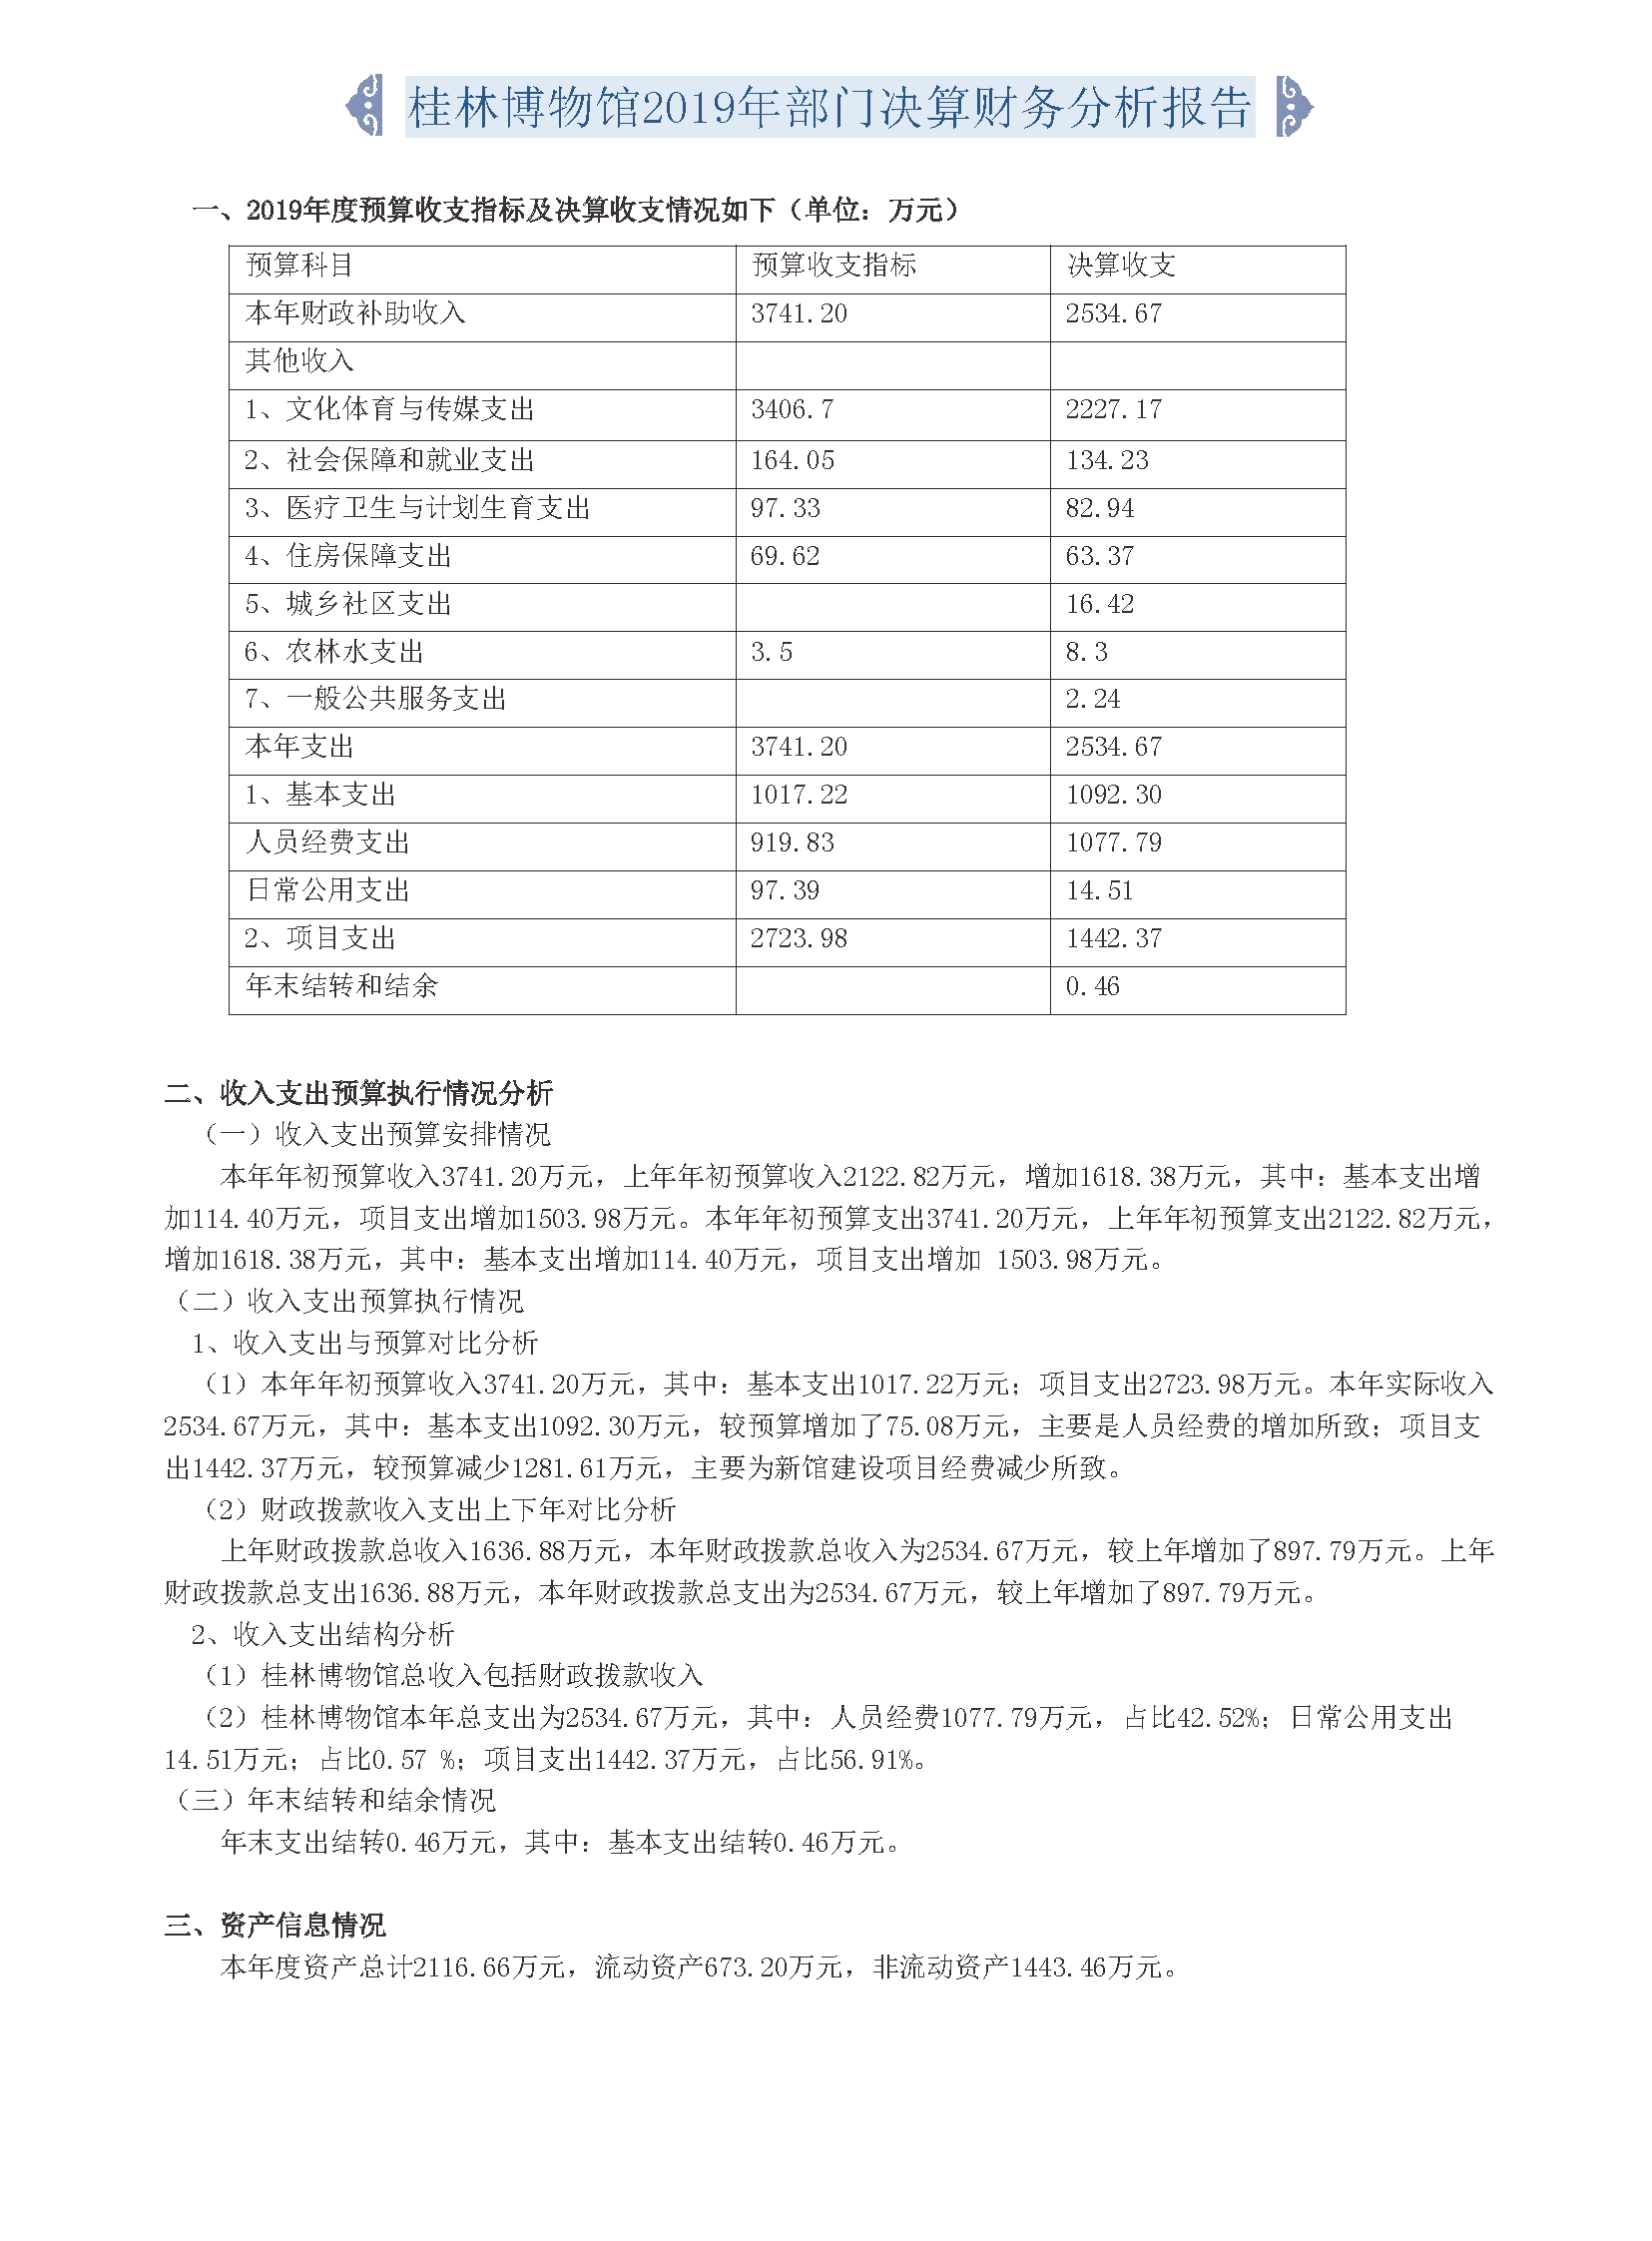 桂林博物馆2019年度报告.pdf_页面_003.png